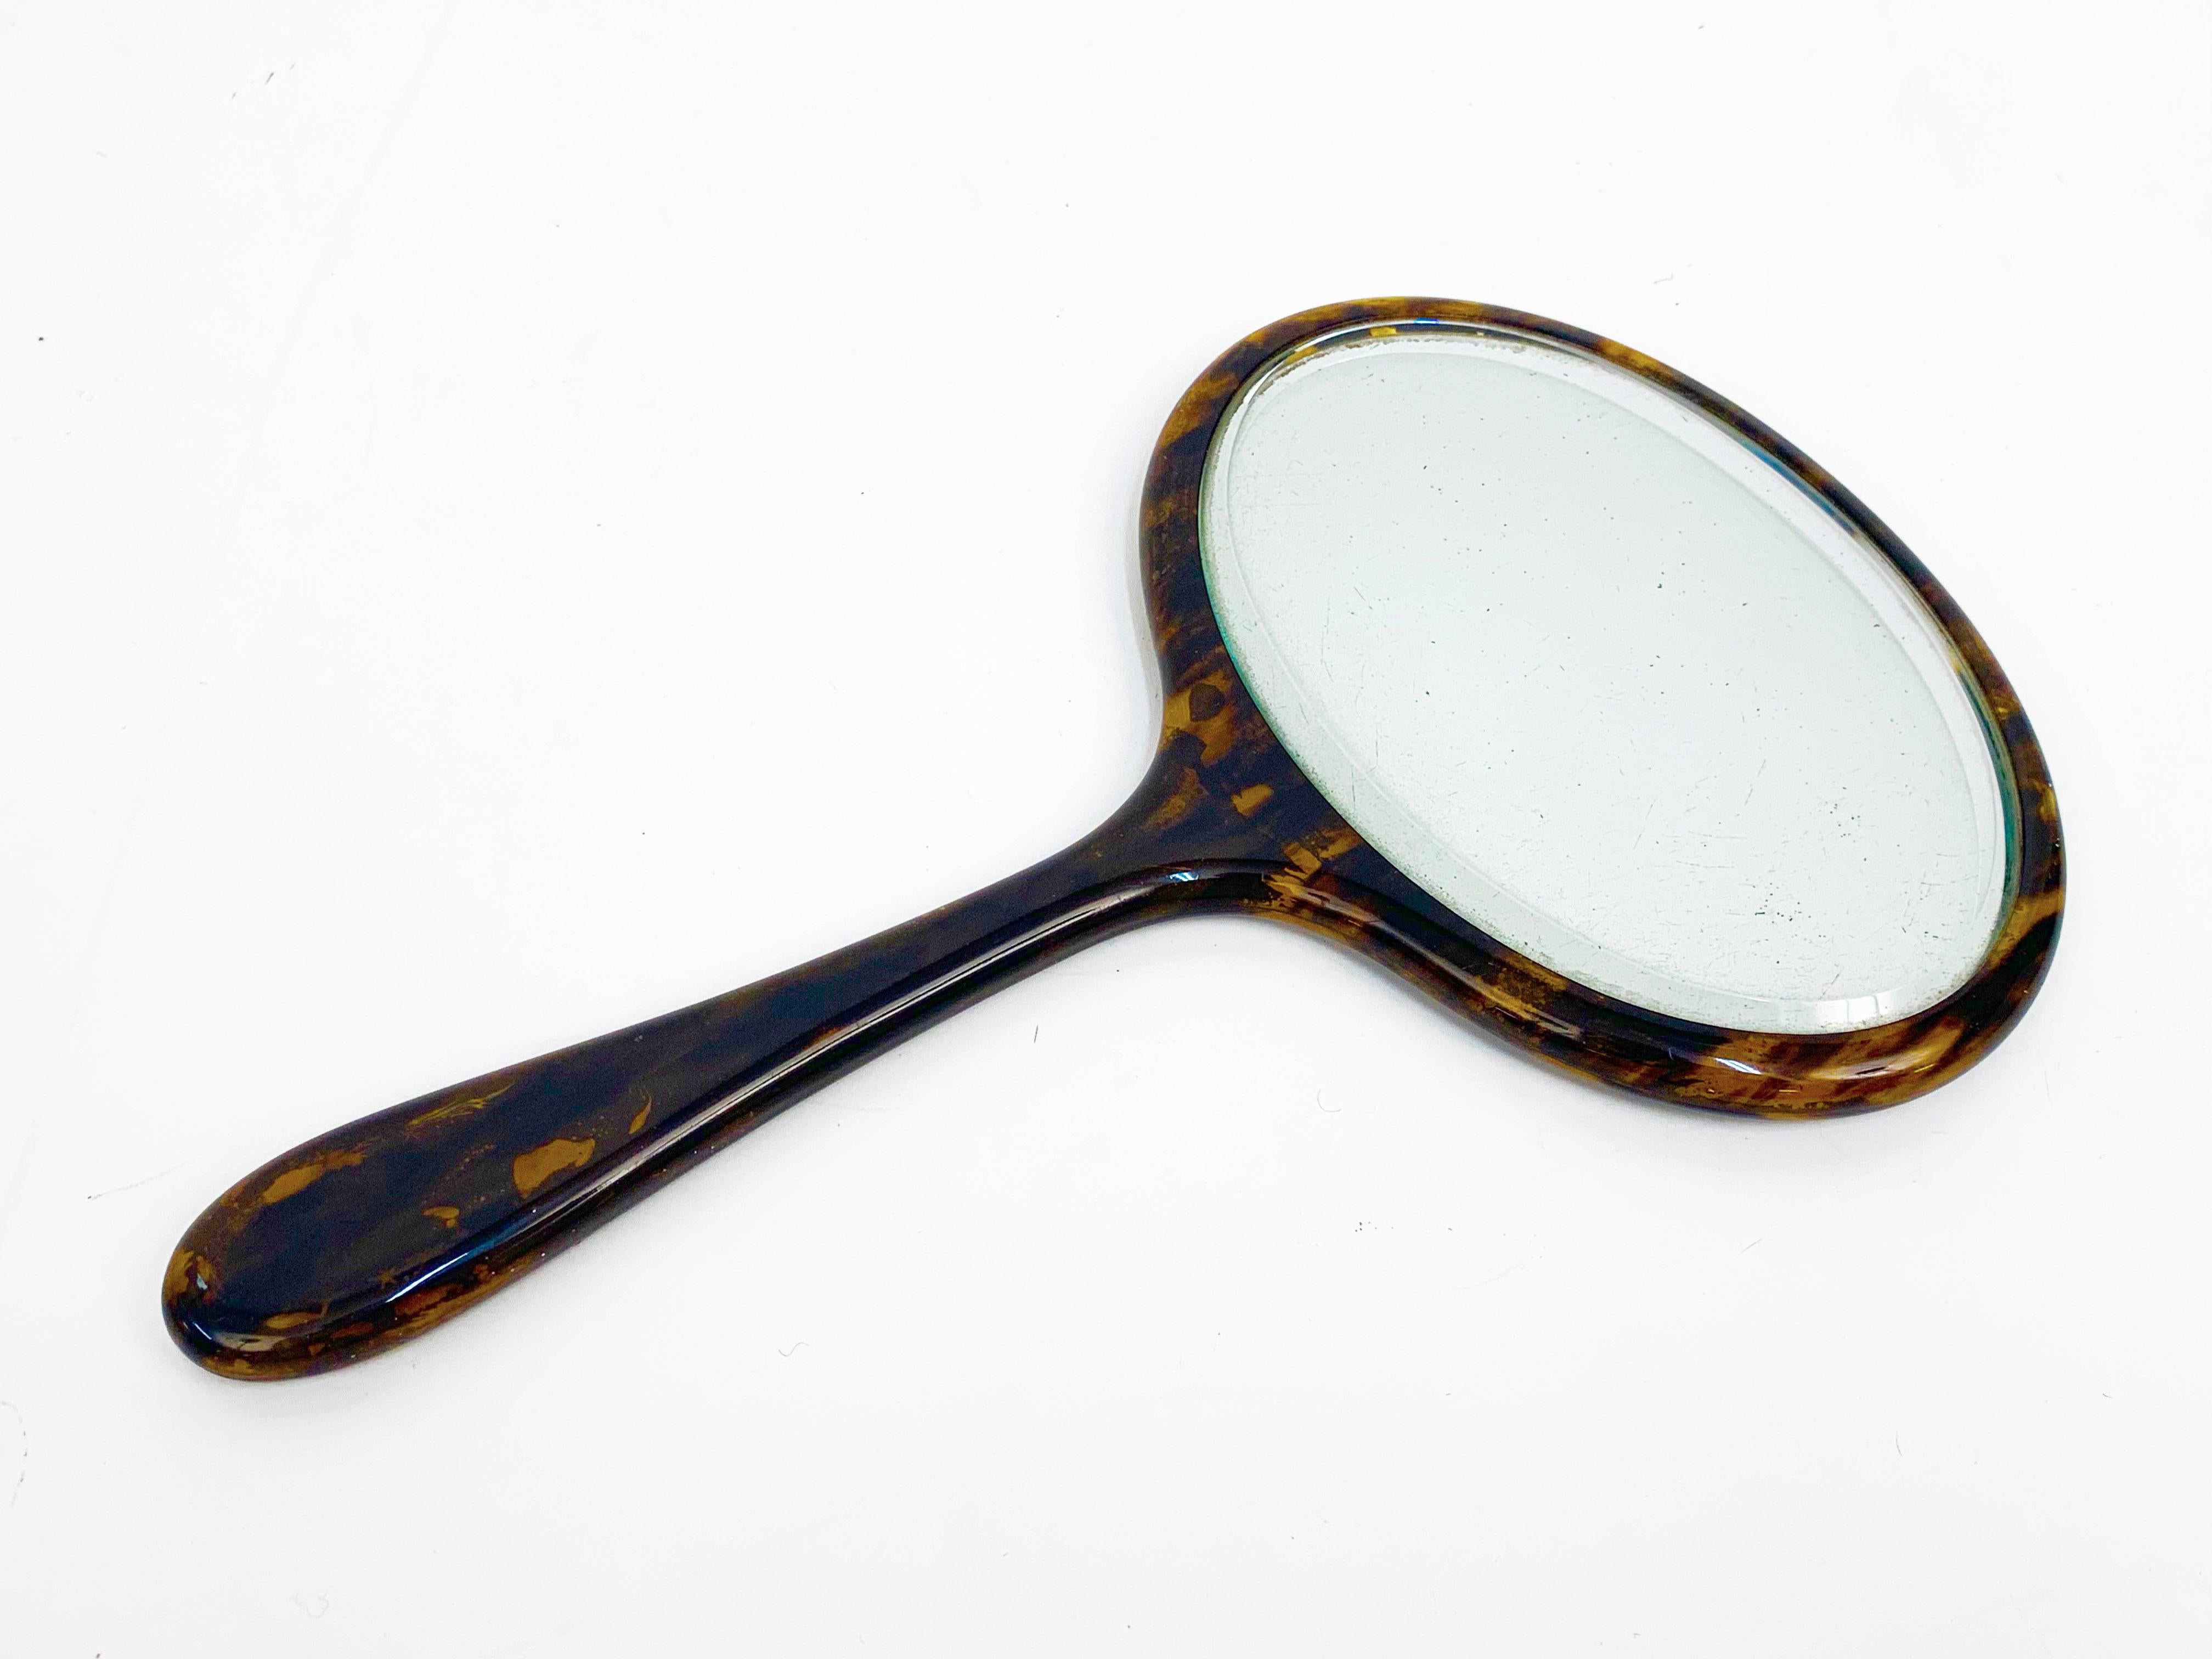 Erstaunlich Mitte des Jahrhunderts oval faux Schildpatt tragbaren Spiegel. Dieser Artikel wurde in den 1950er Jahren in England hergestellt.

Dieses Stück ist wunderbar, weil es mit seinen kleinen Abmessungen zu Schlafzimmermöbeln passt und mit